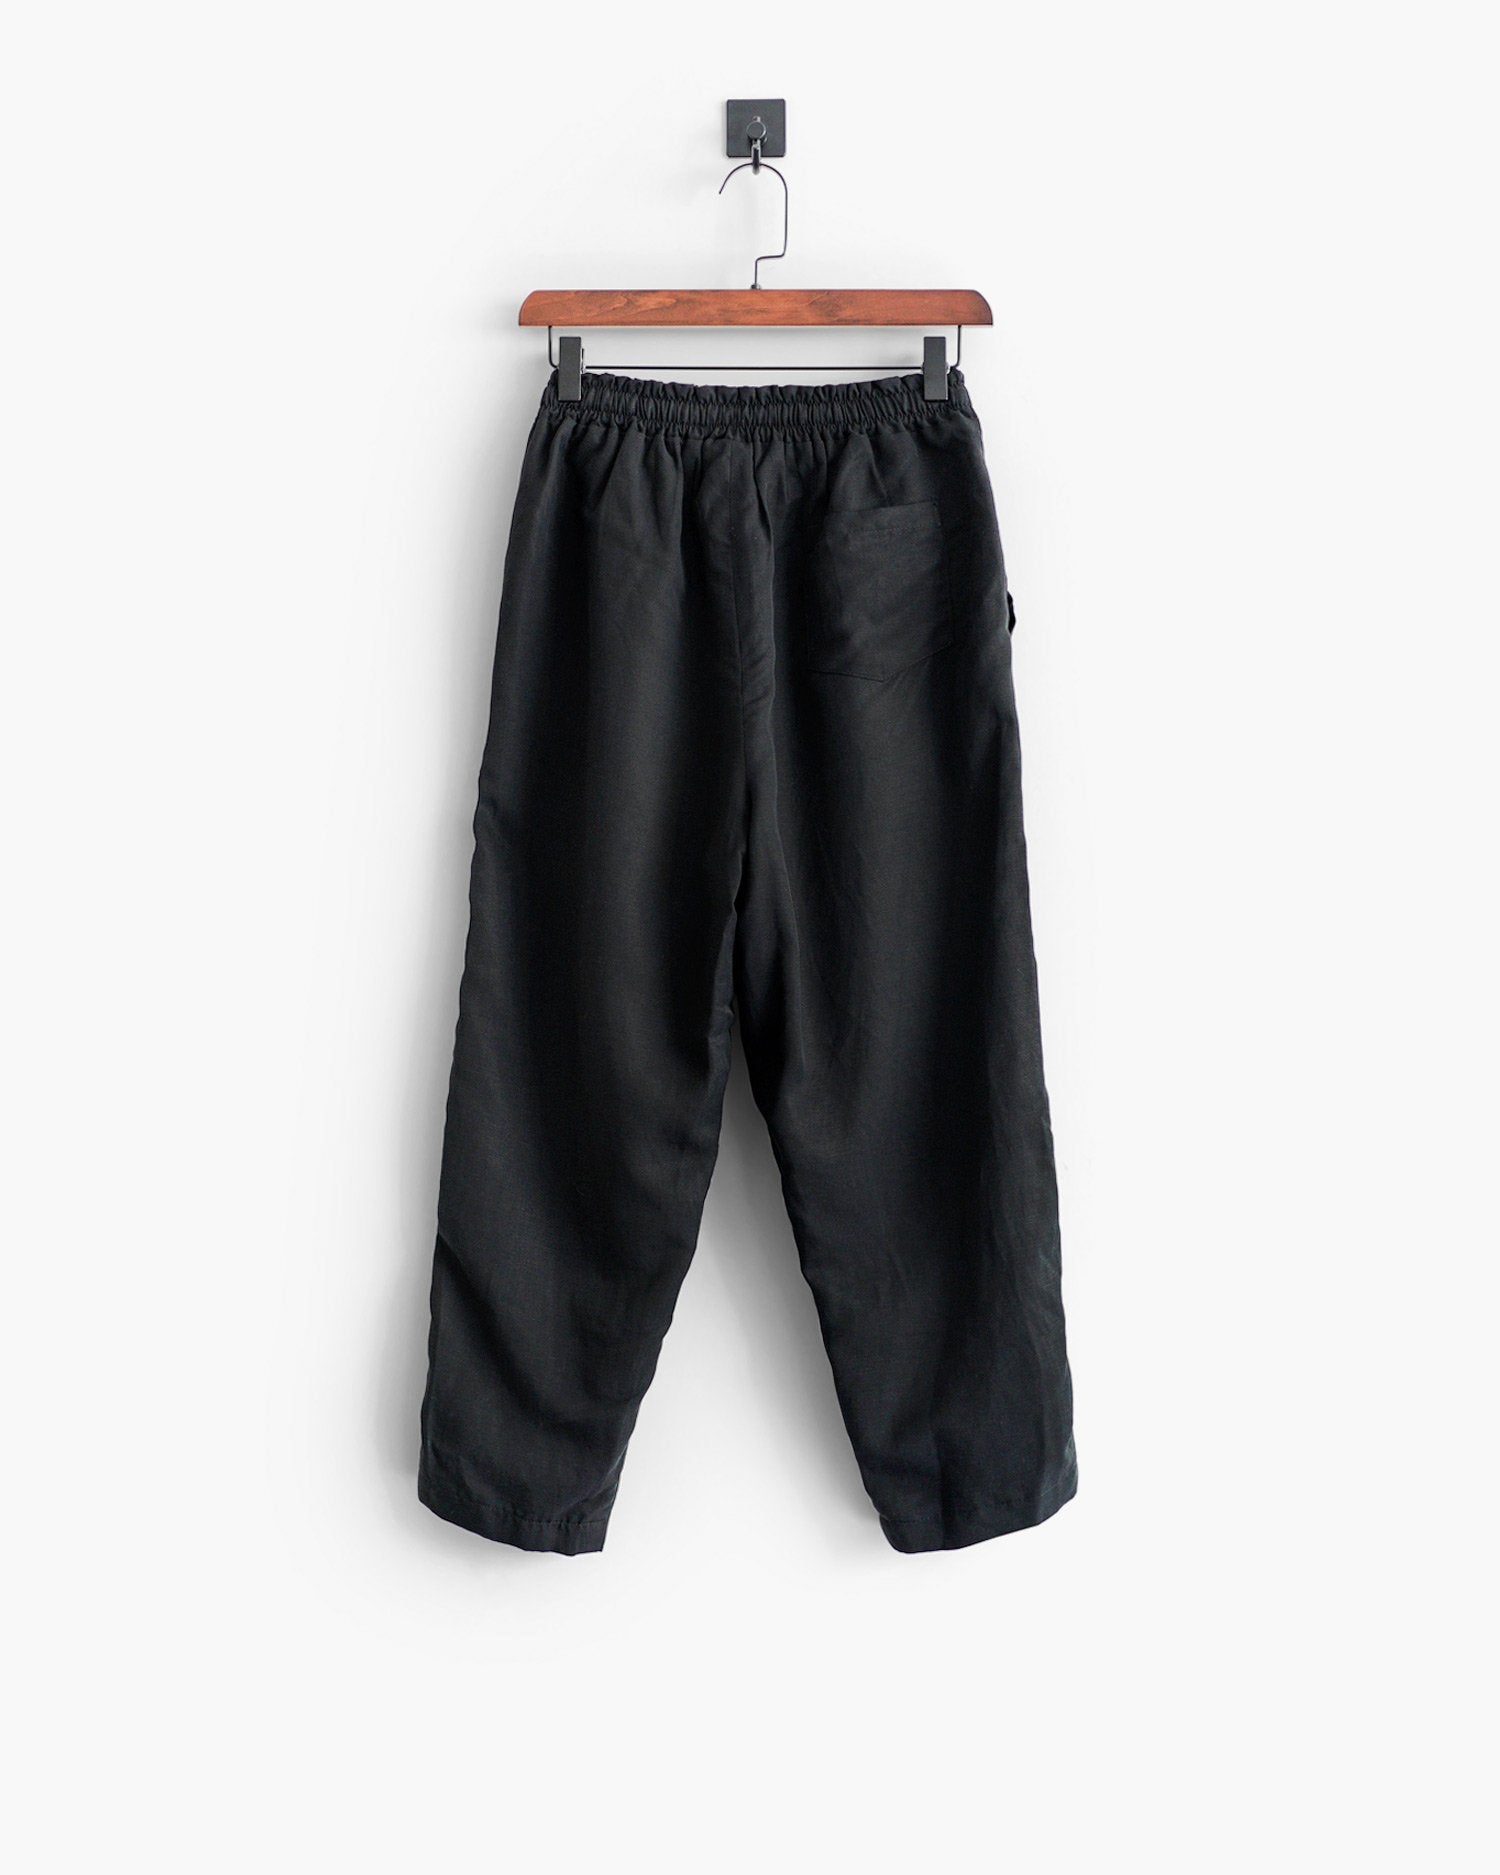 ROSEN-S Leisure Trousers - Black Silk Linen